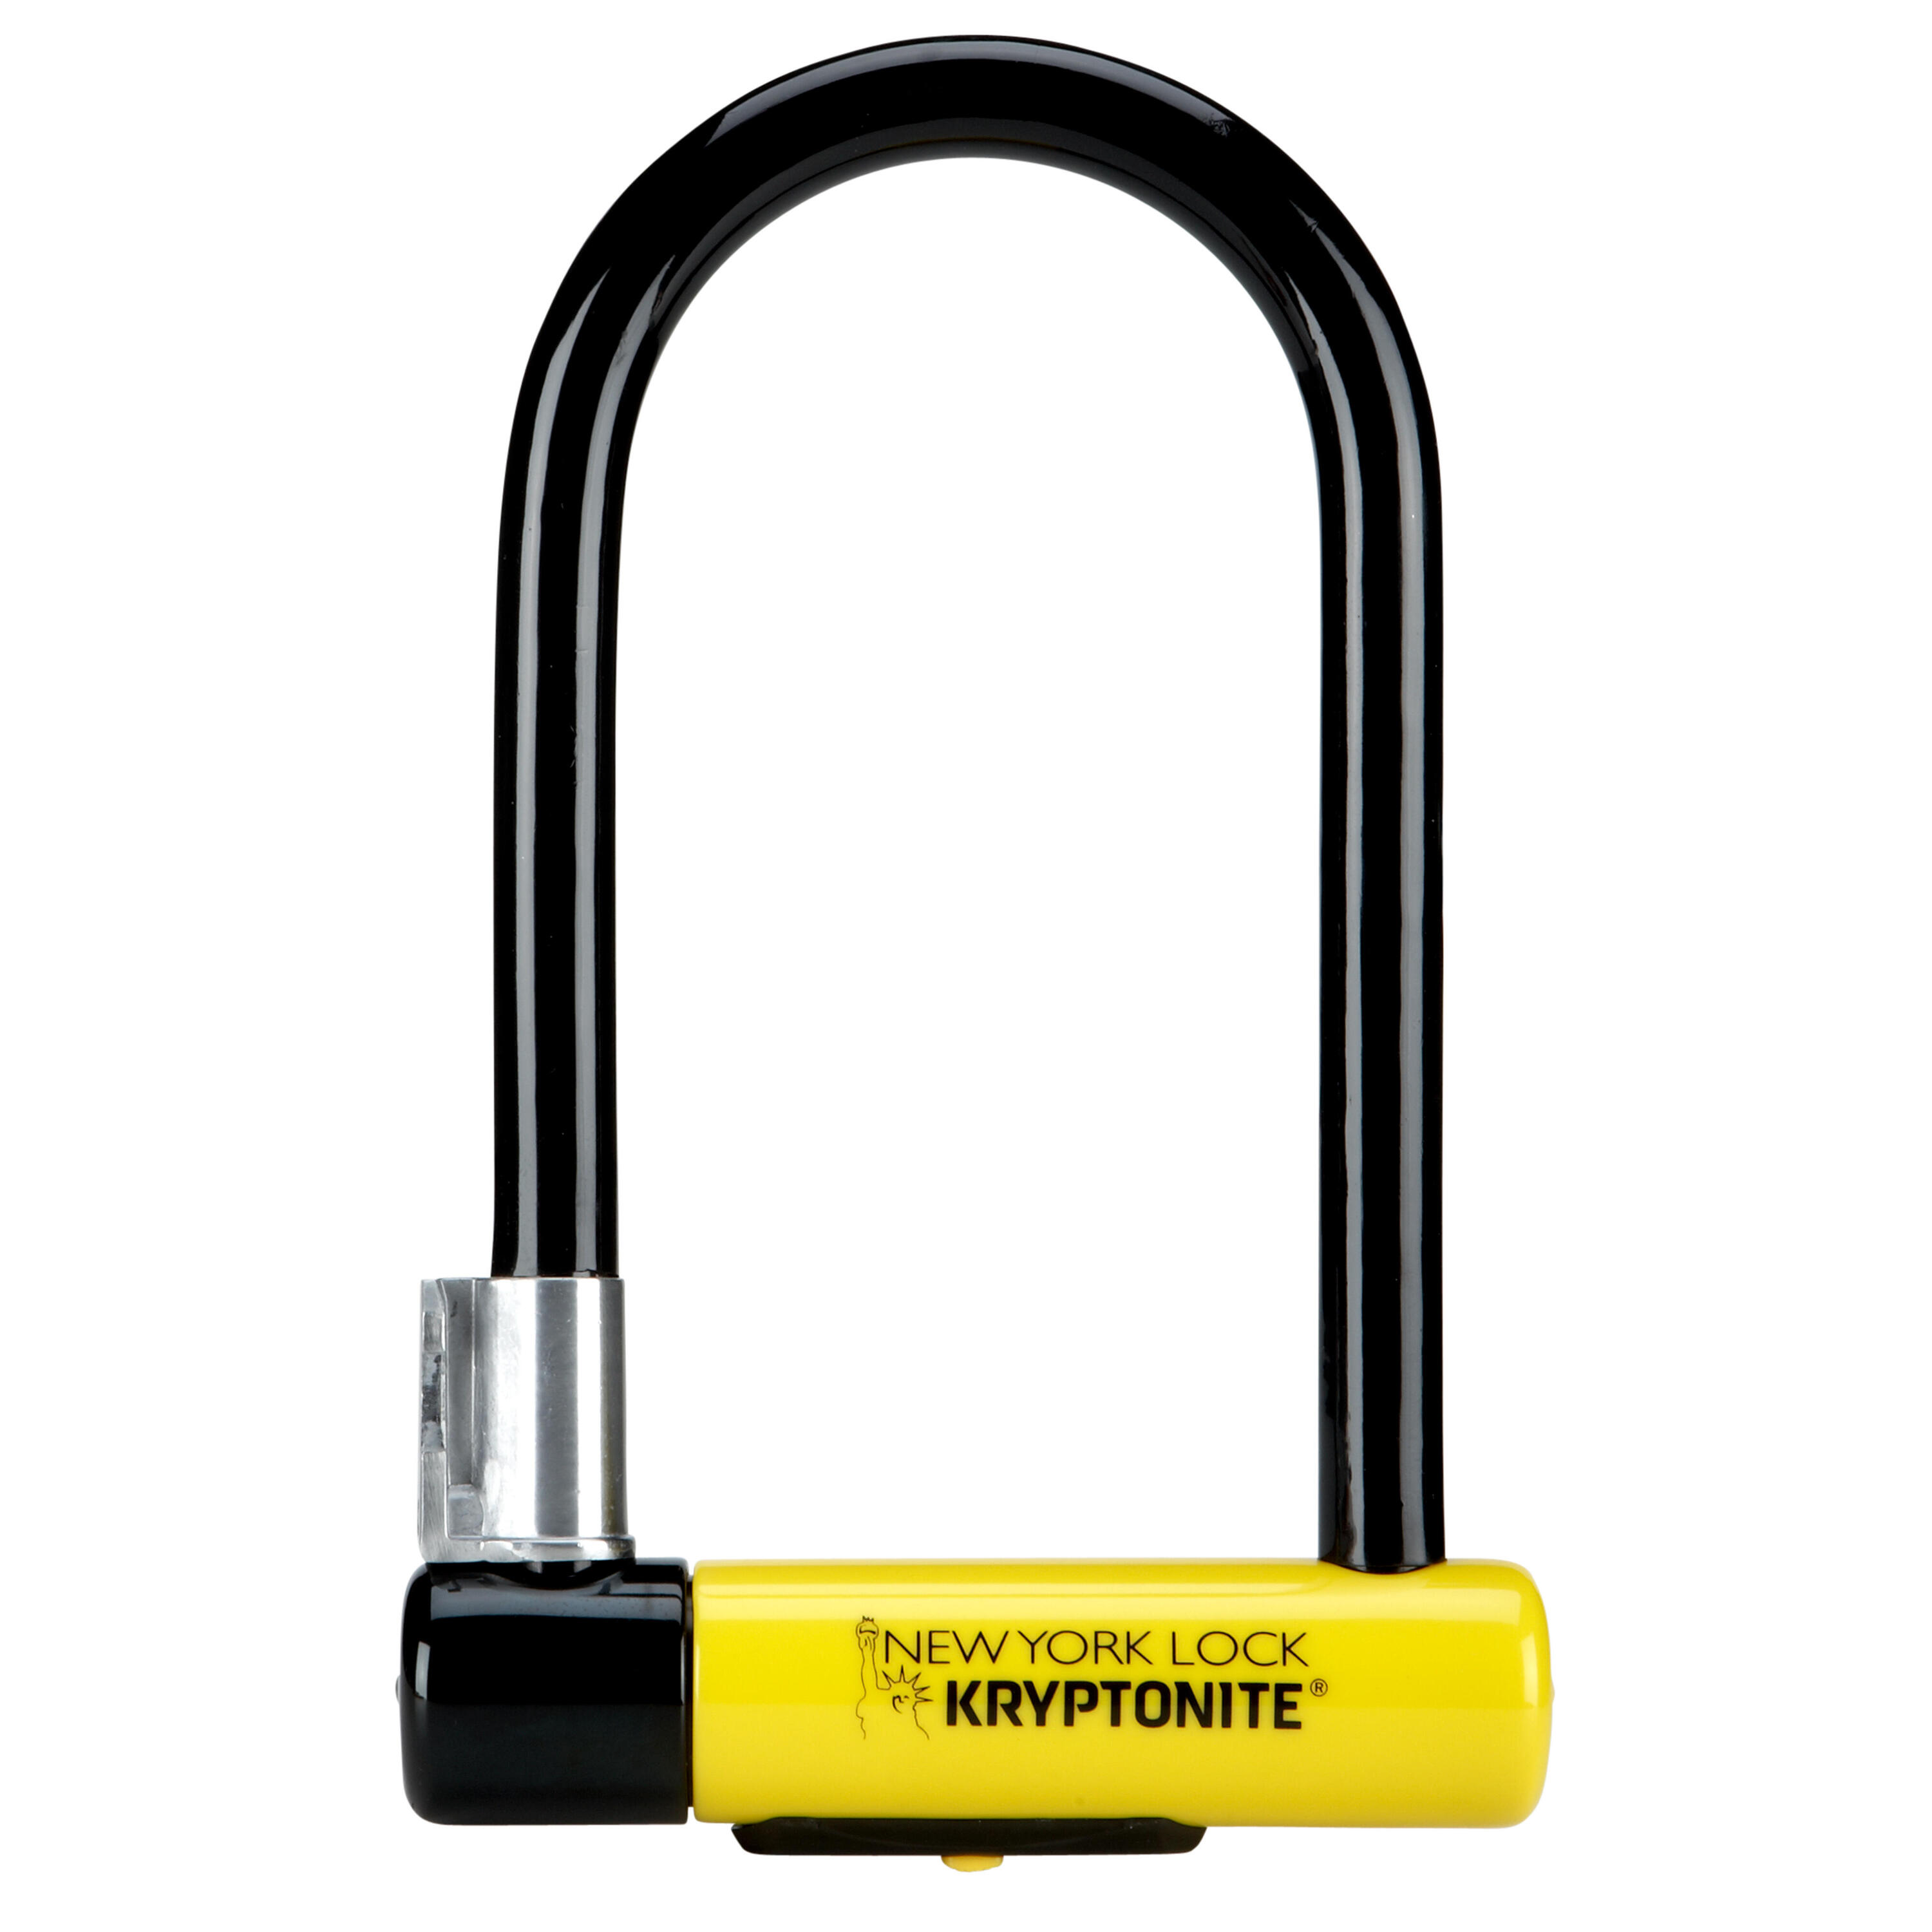 KRYPTONITE Kryptonite New York Standard U-Lock with Flexframe bracket